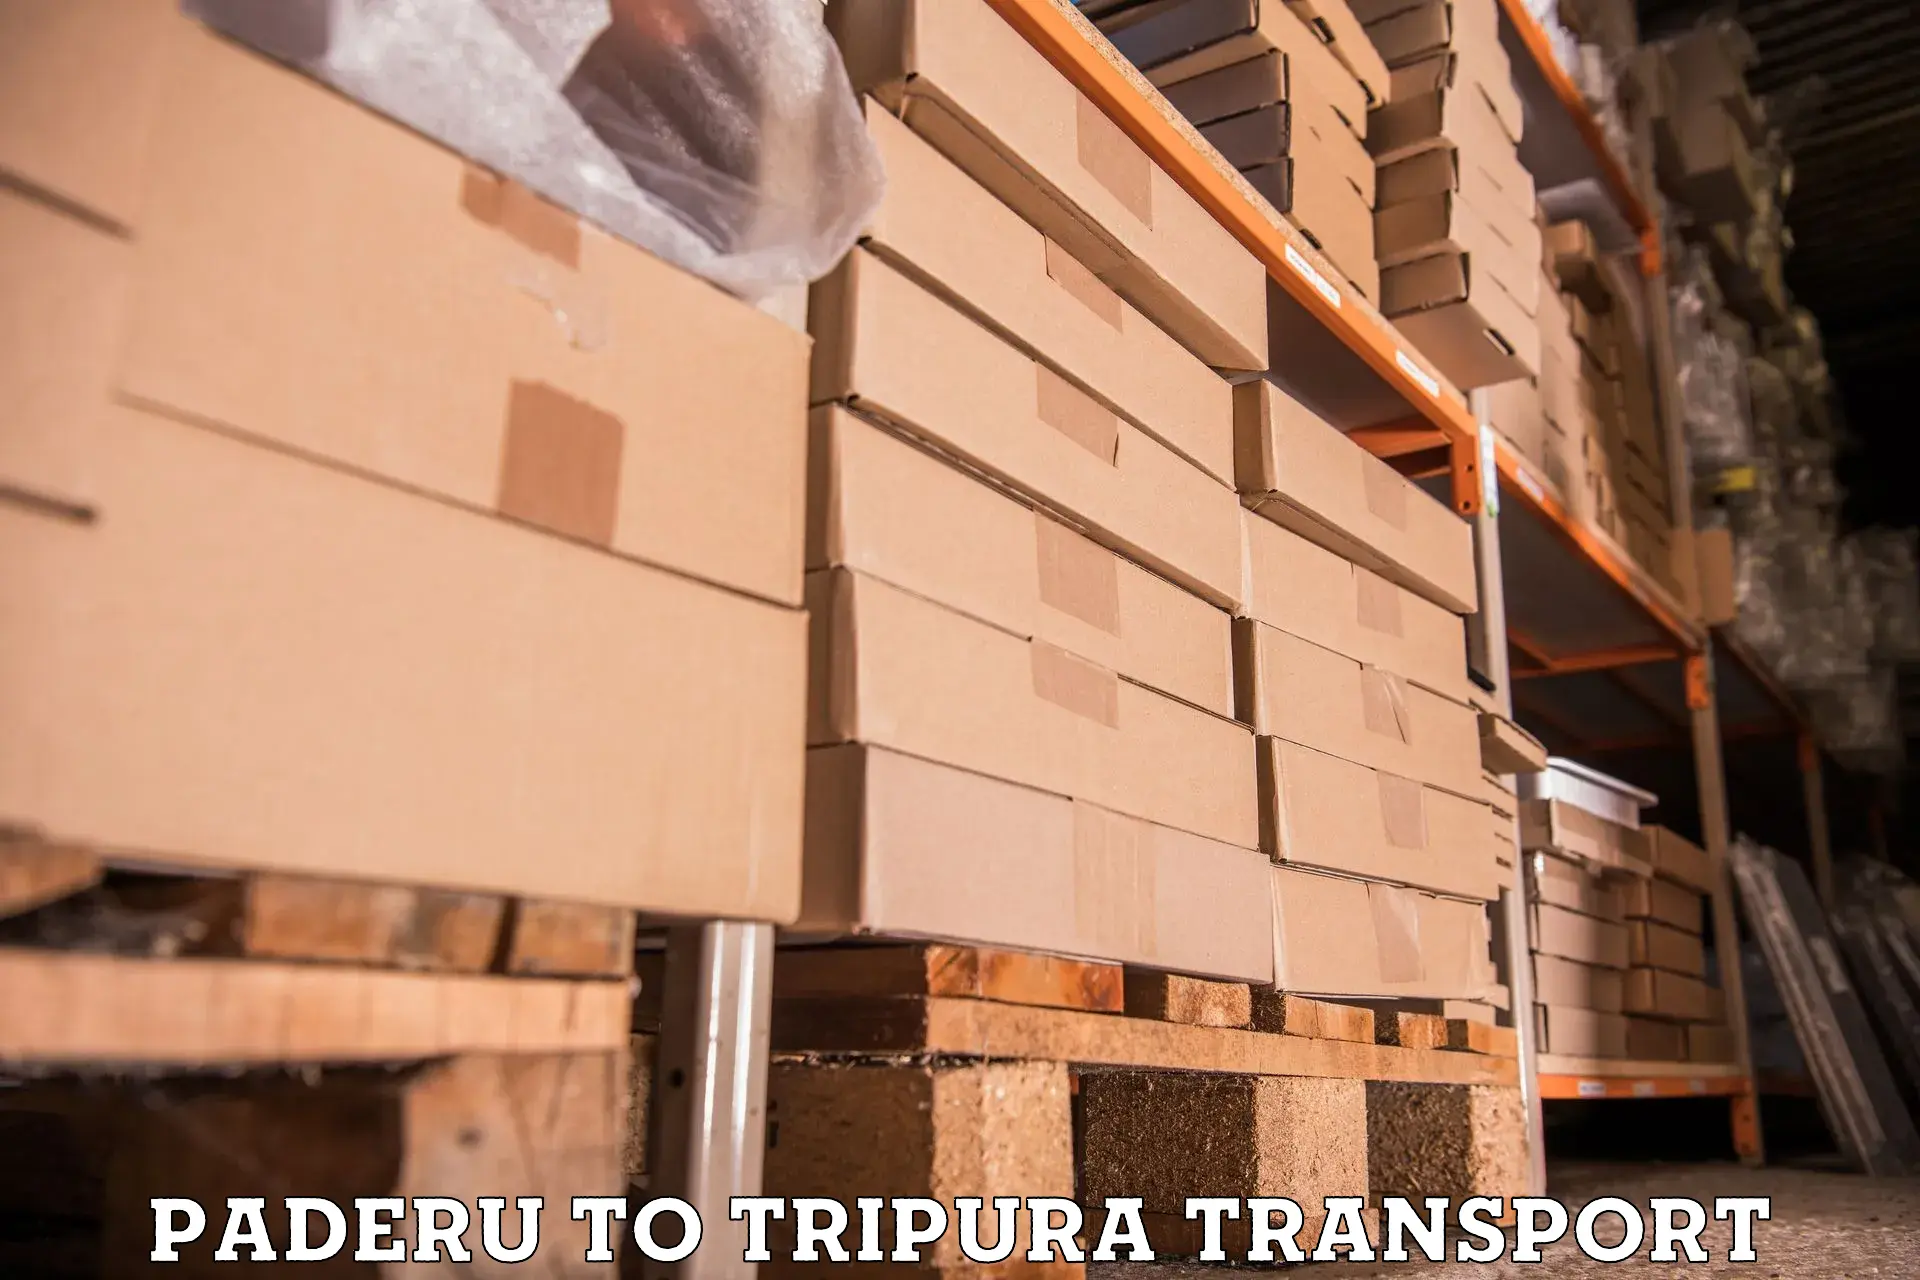 Transport in sharing Paderu to Tripura